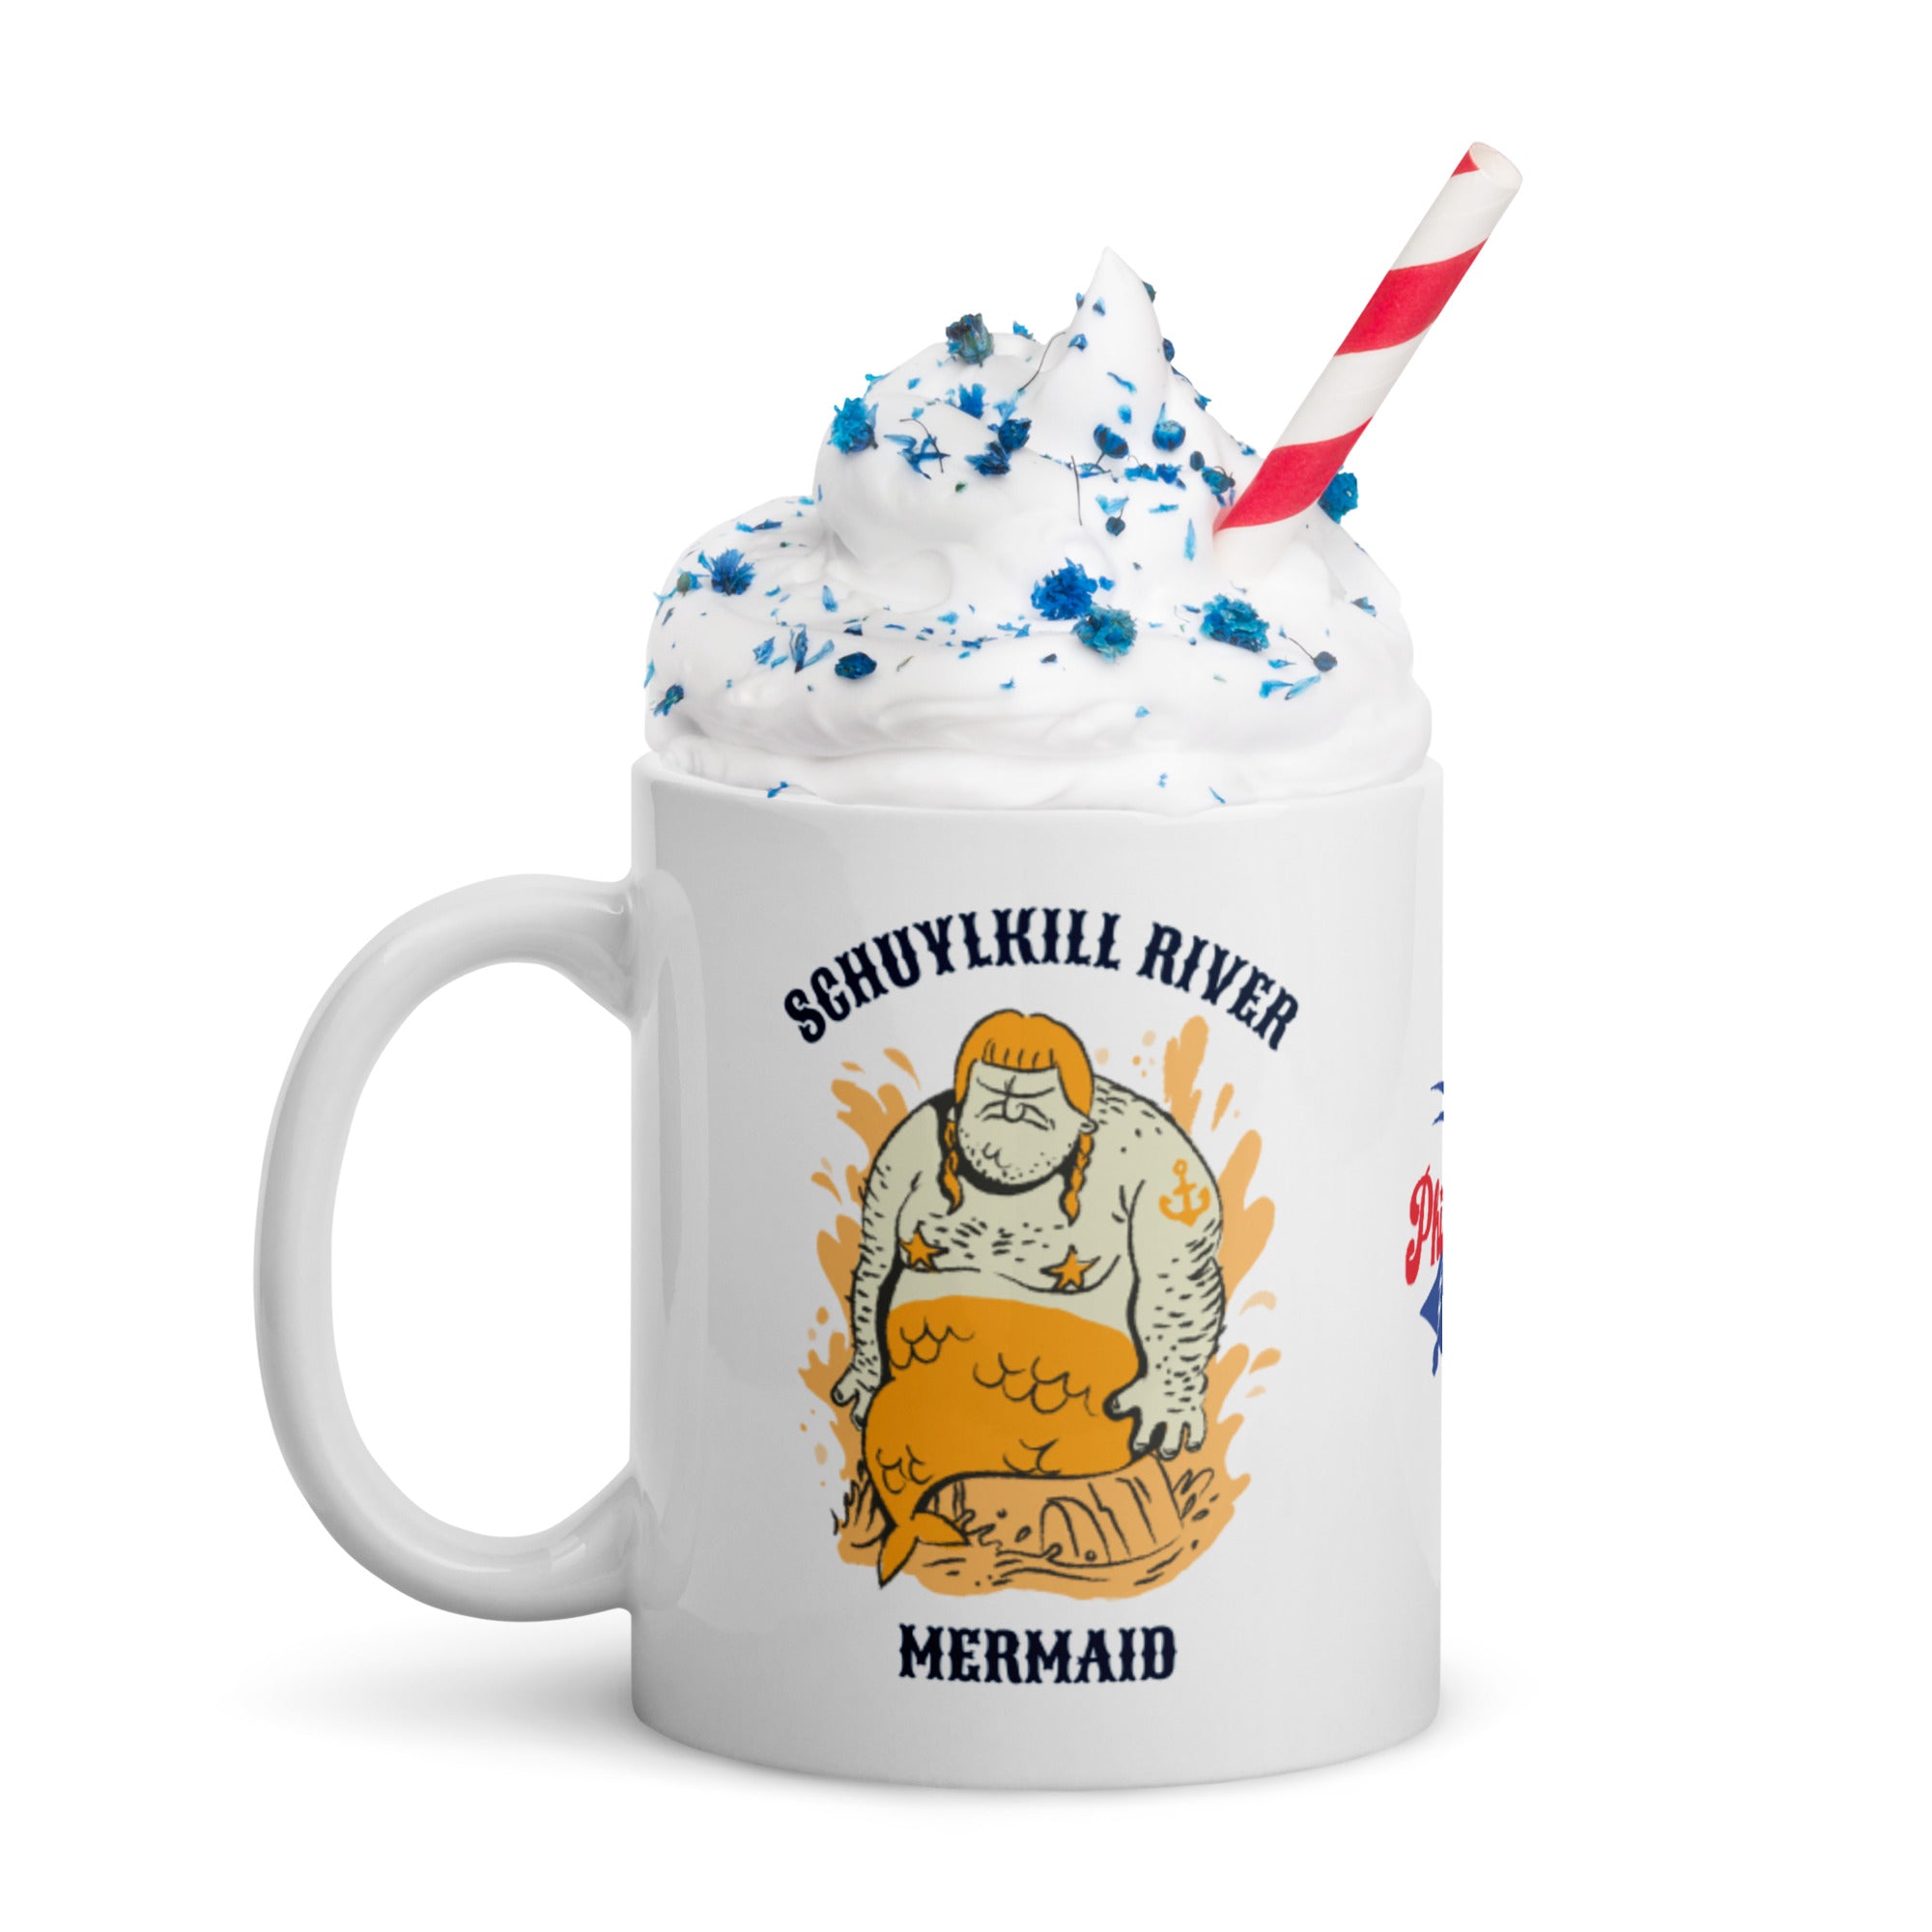 "Schuylkill River Mermaid" Mug